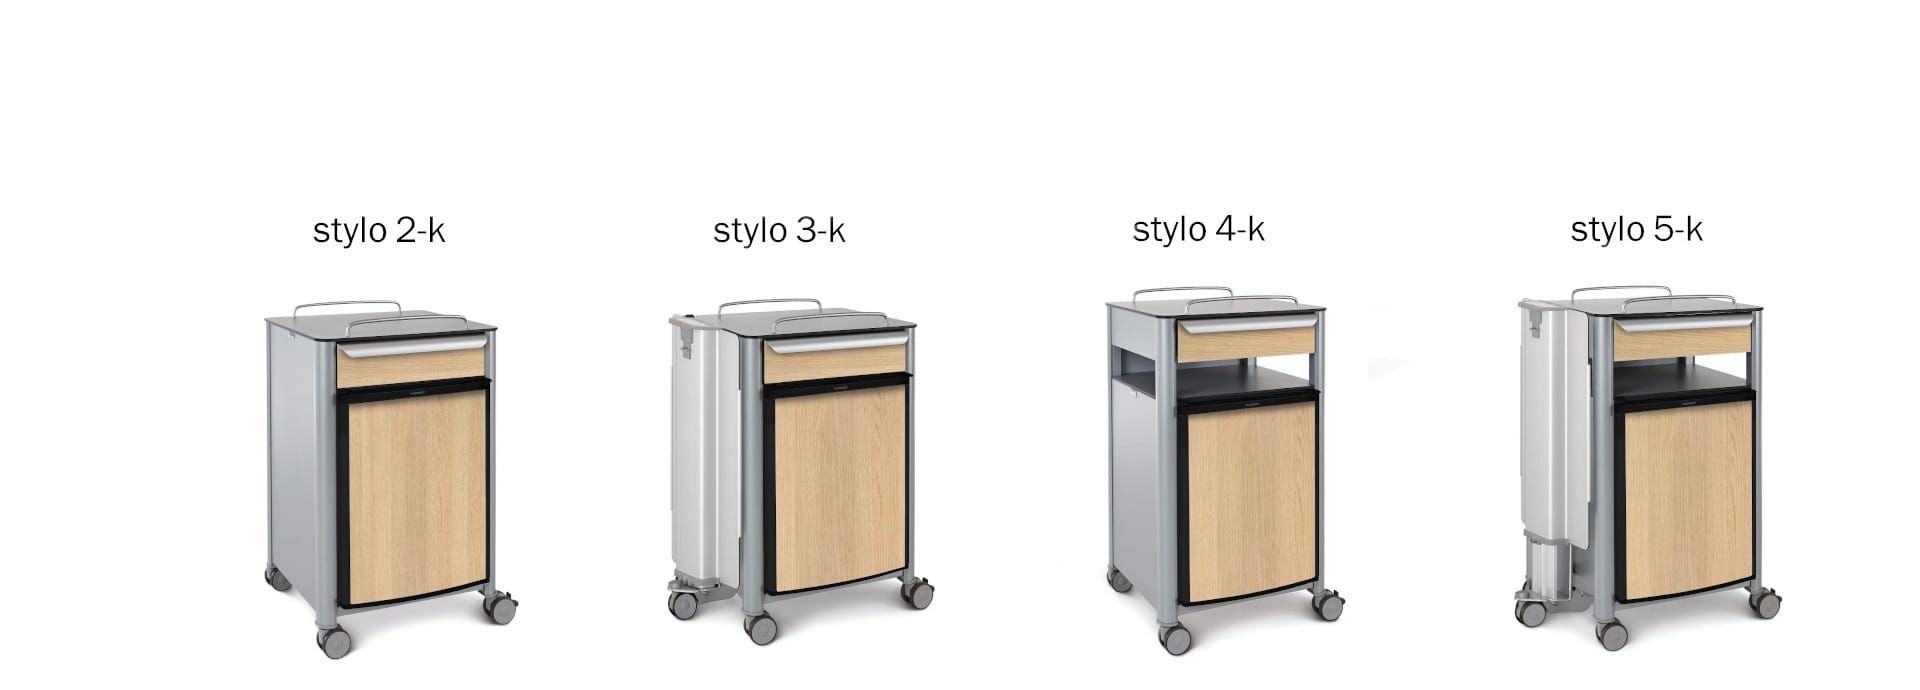 De stylo-nachtkastjesserie combineert een gerieflijk meubeldesign met innovatieve functies en maakt zo praktijkgerichte productvarianten mogelijk.